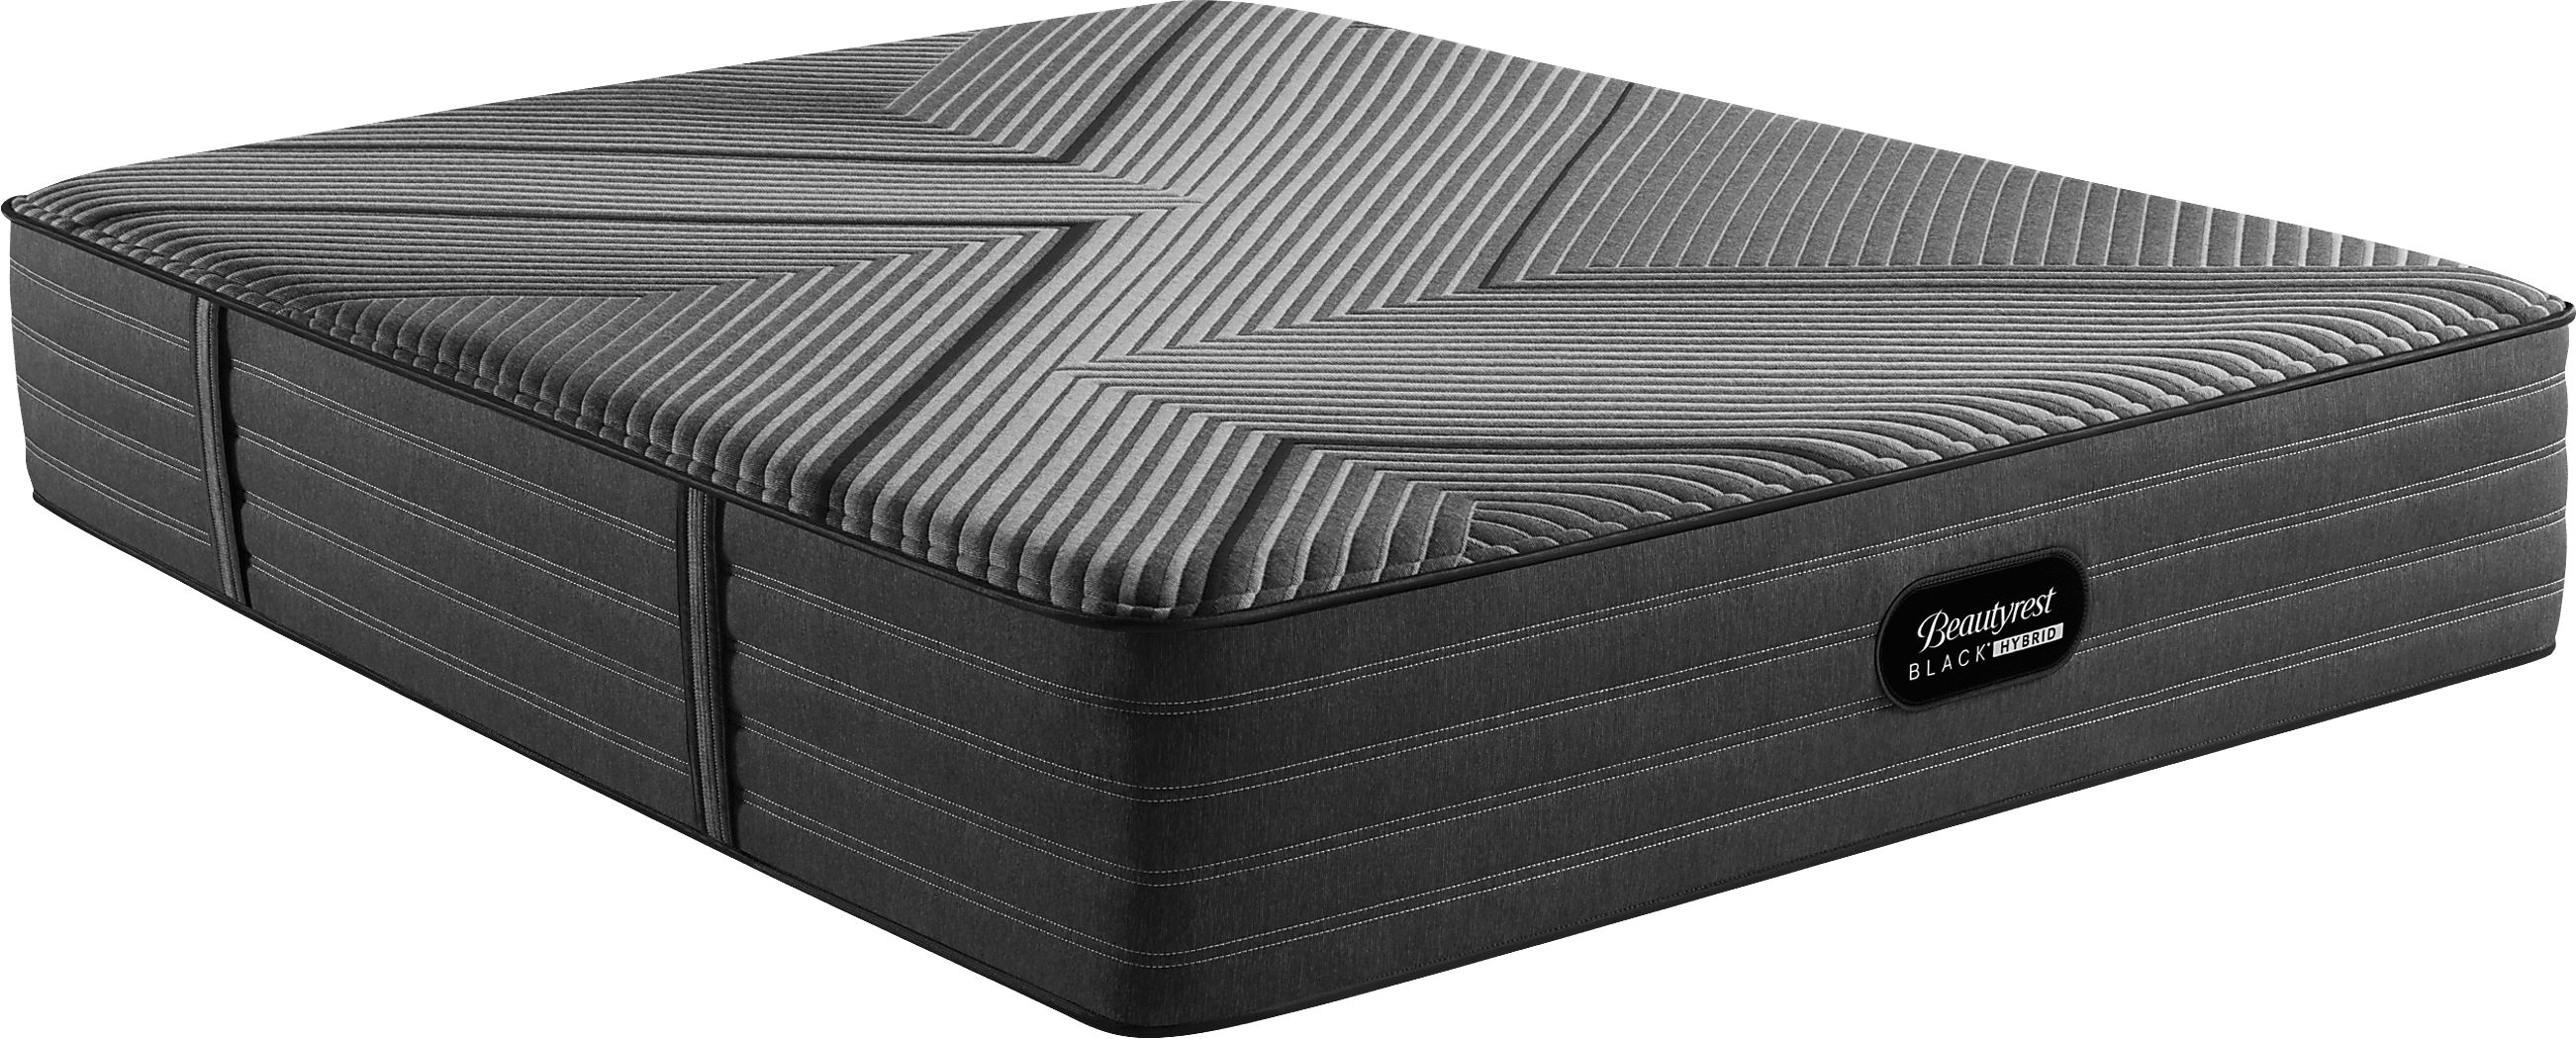 almadin lx for twin mattress